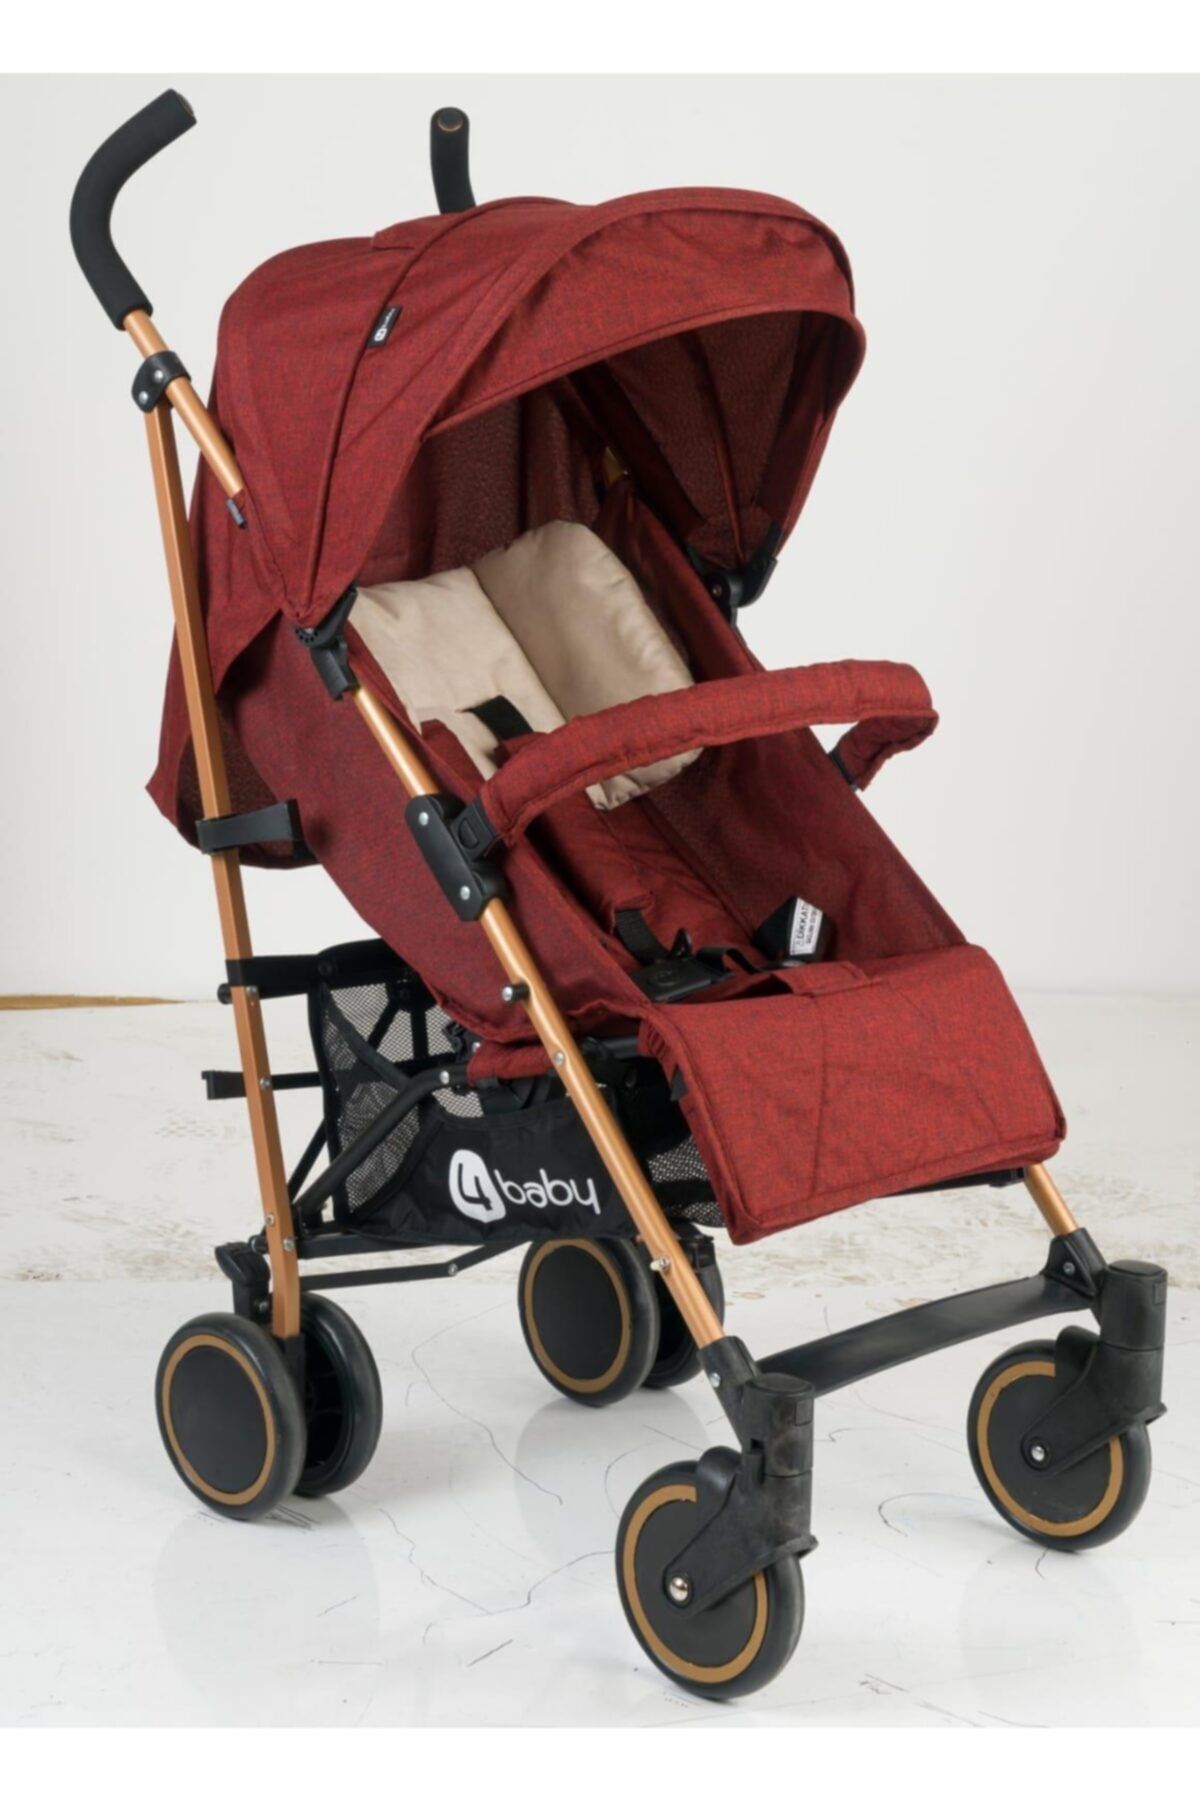 4 Baby Active Travel Sistem Bebek Arabası Ab-200